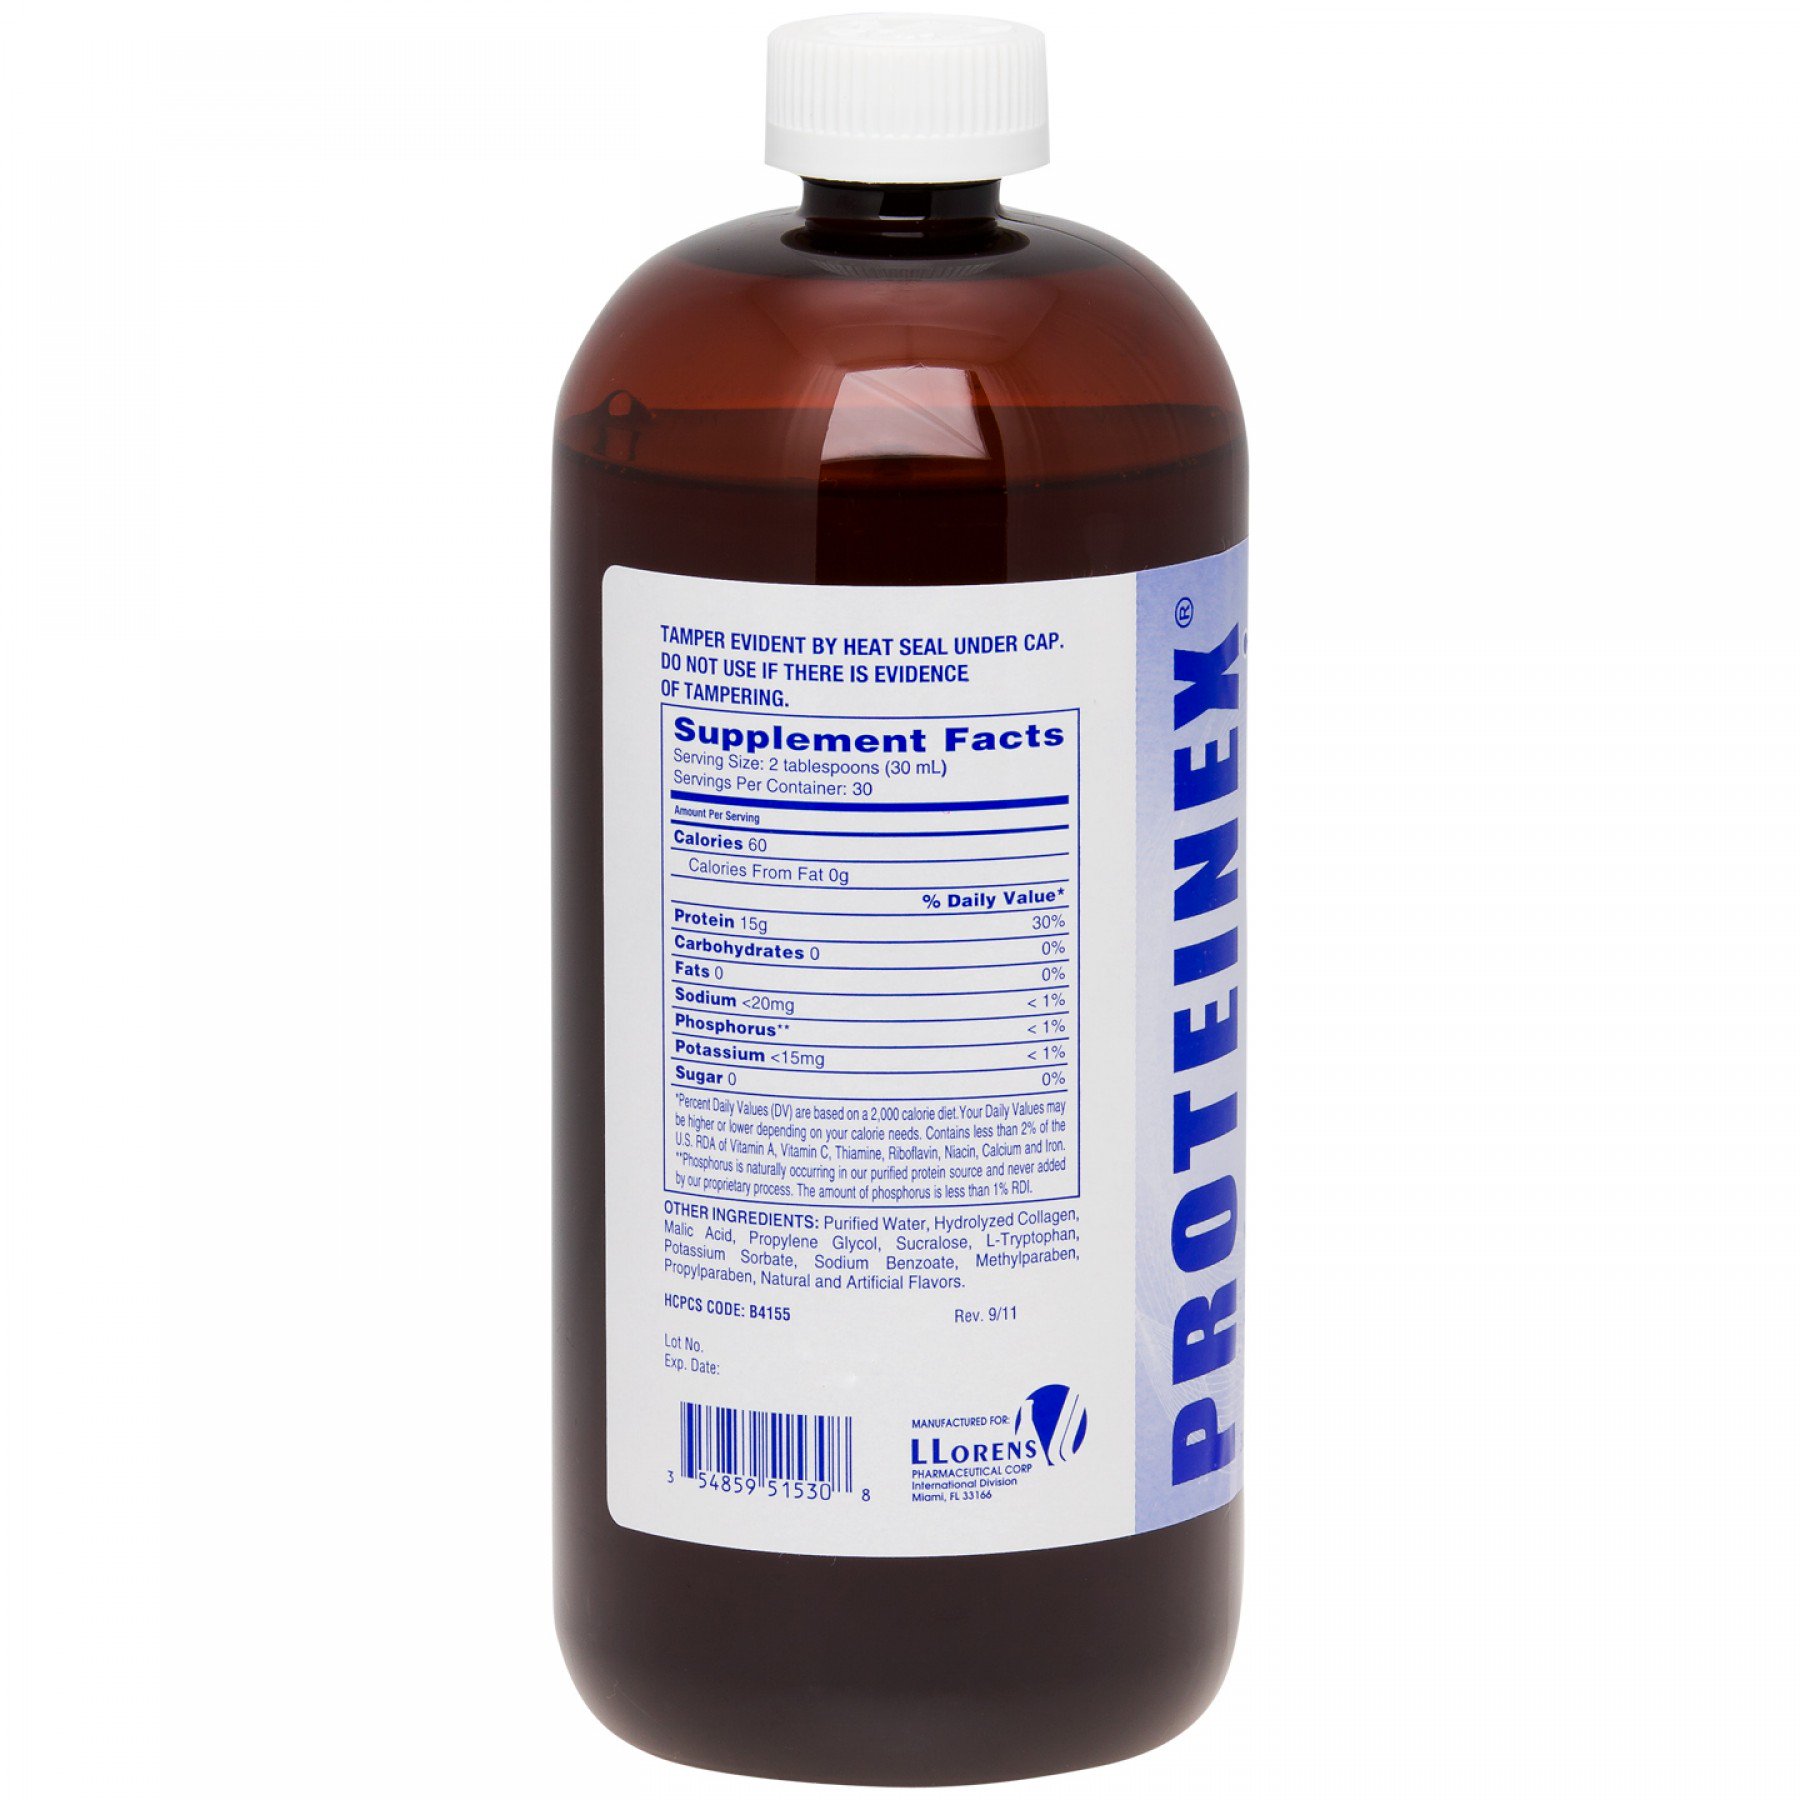 Proteinex 15 Oral Protein Supplement, 16 oz. Bottle